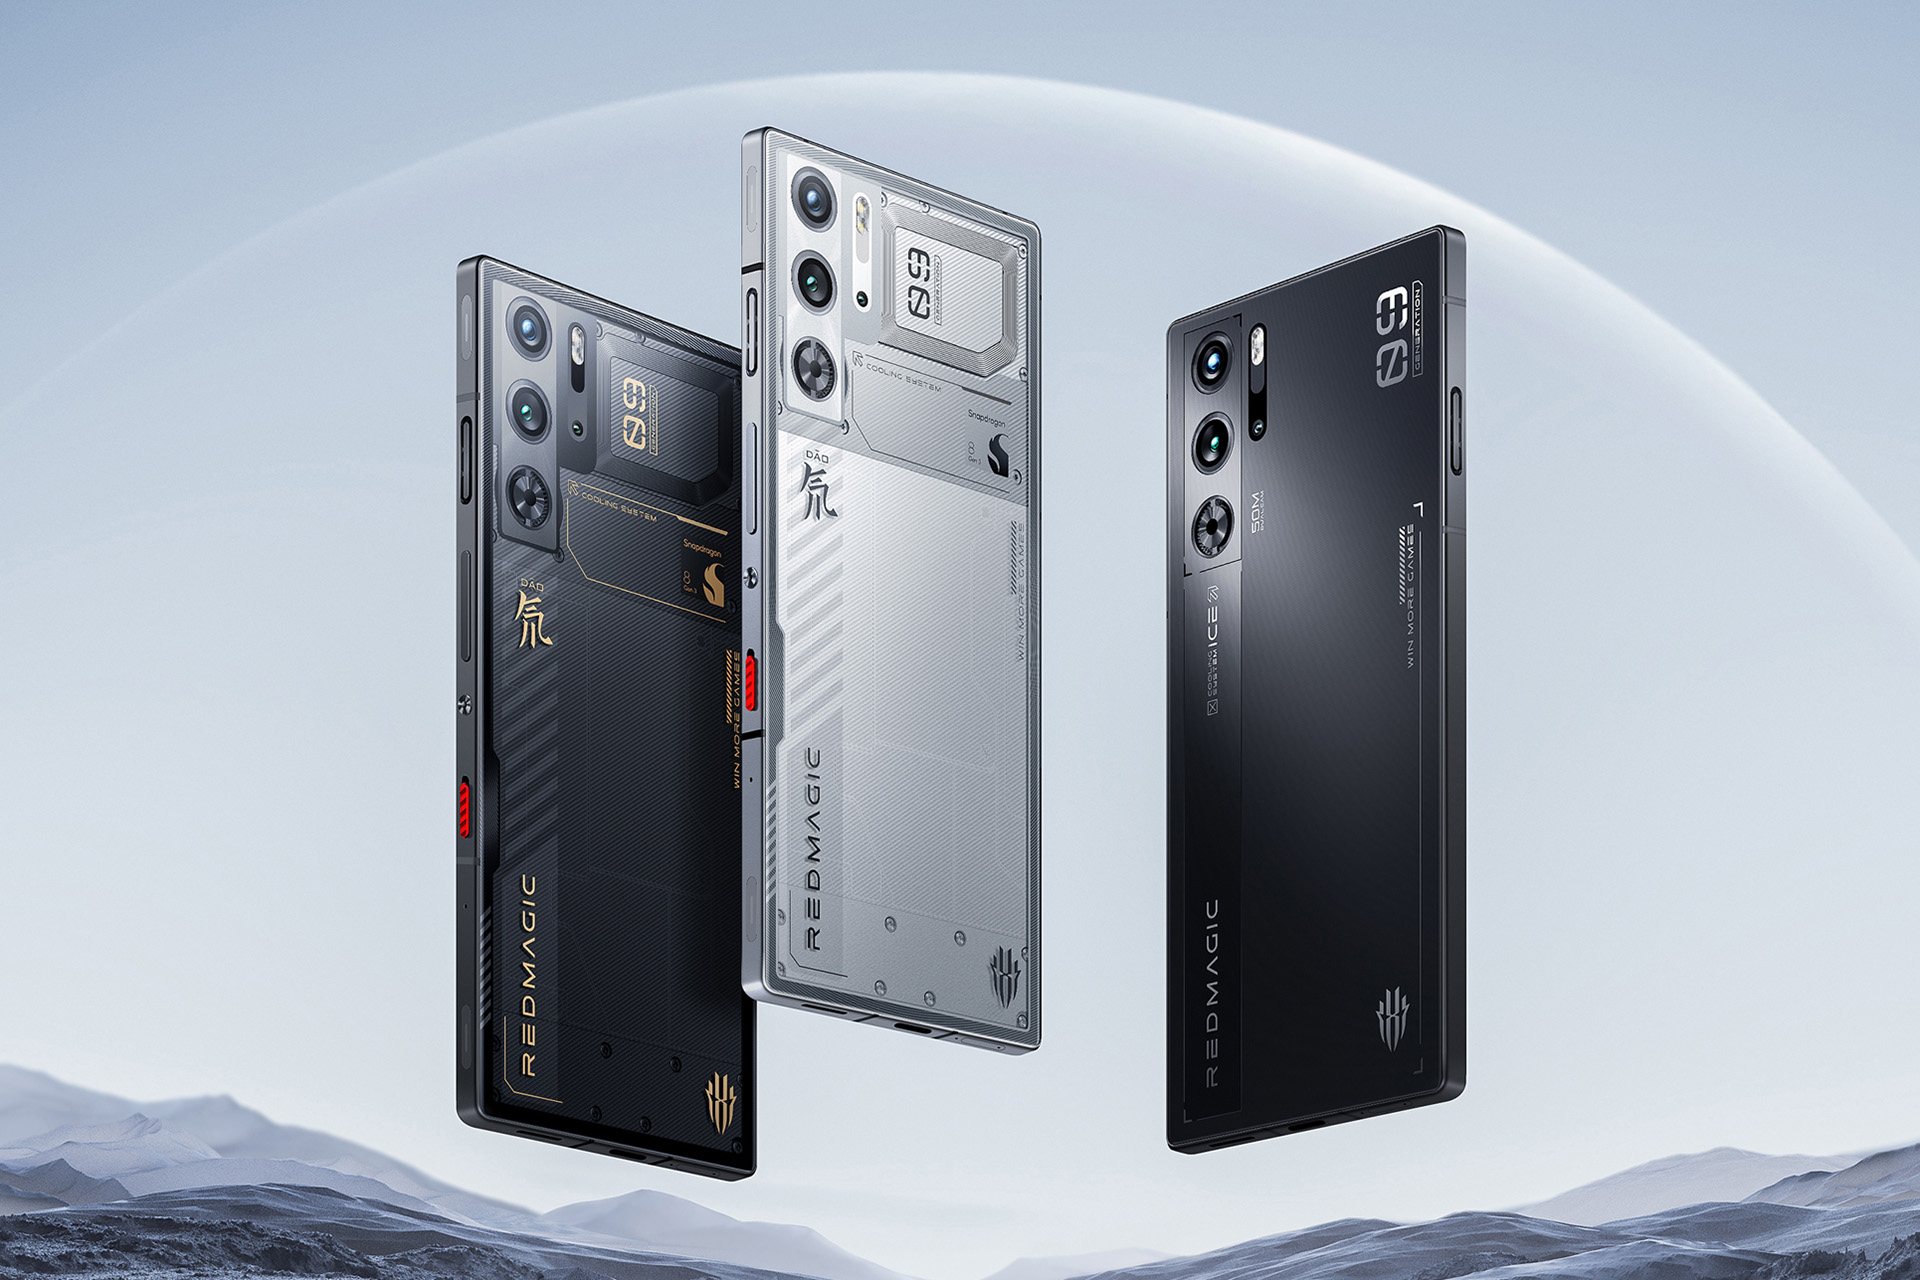 Red Magic 9 Pro Plus – Tecphone